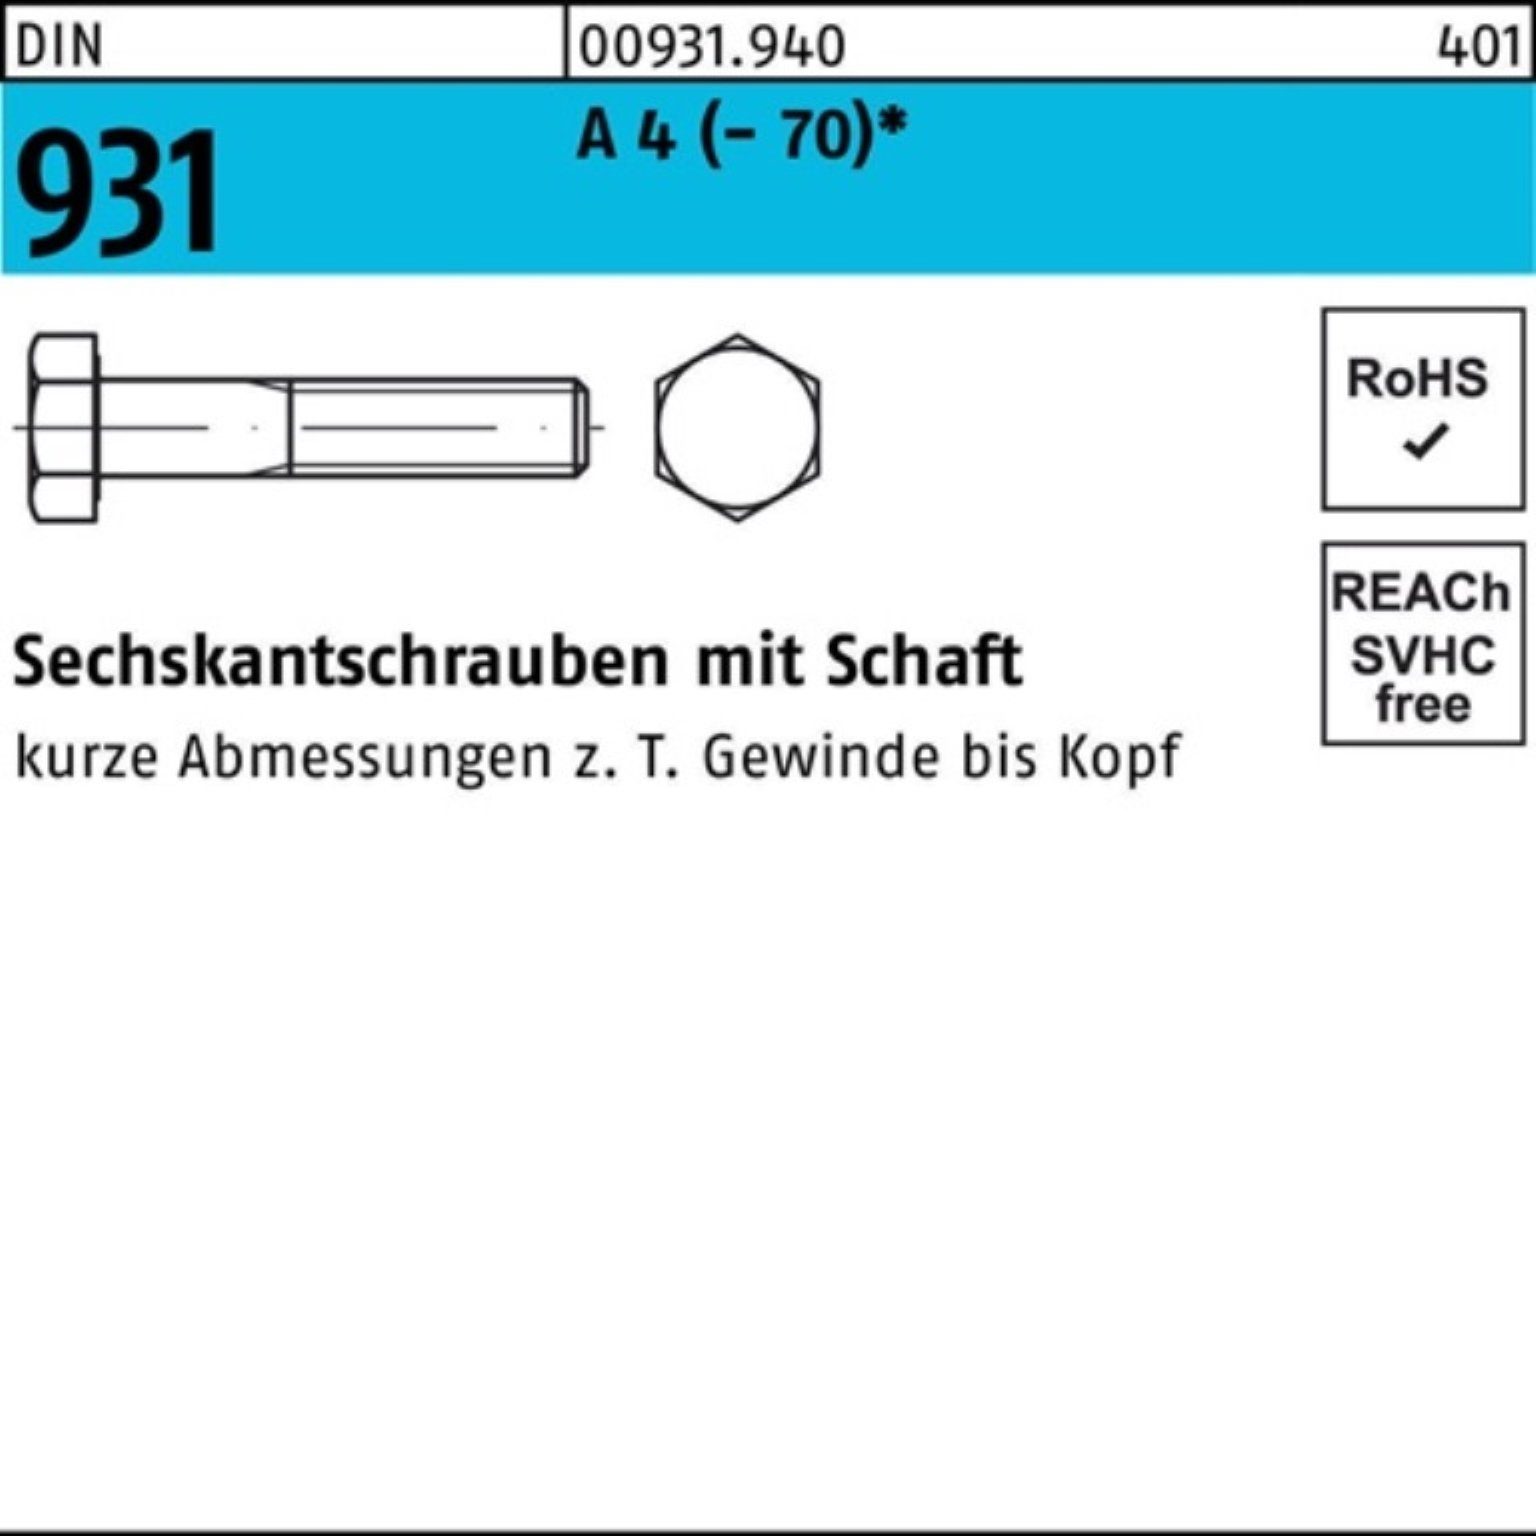 140 1 DIN Pack Reyher Stü Sechskantschraube 931 M18x A Sechskantschraube 4 (70) Schaft 100er